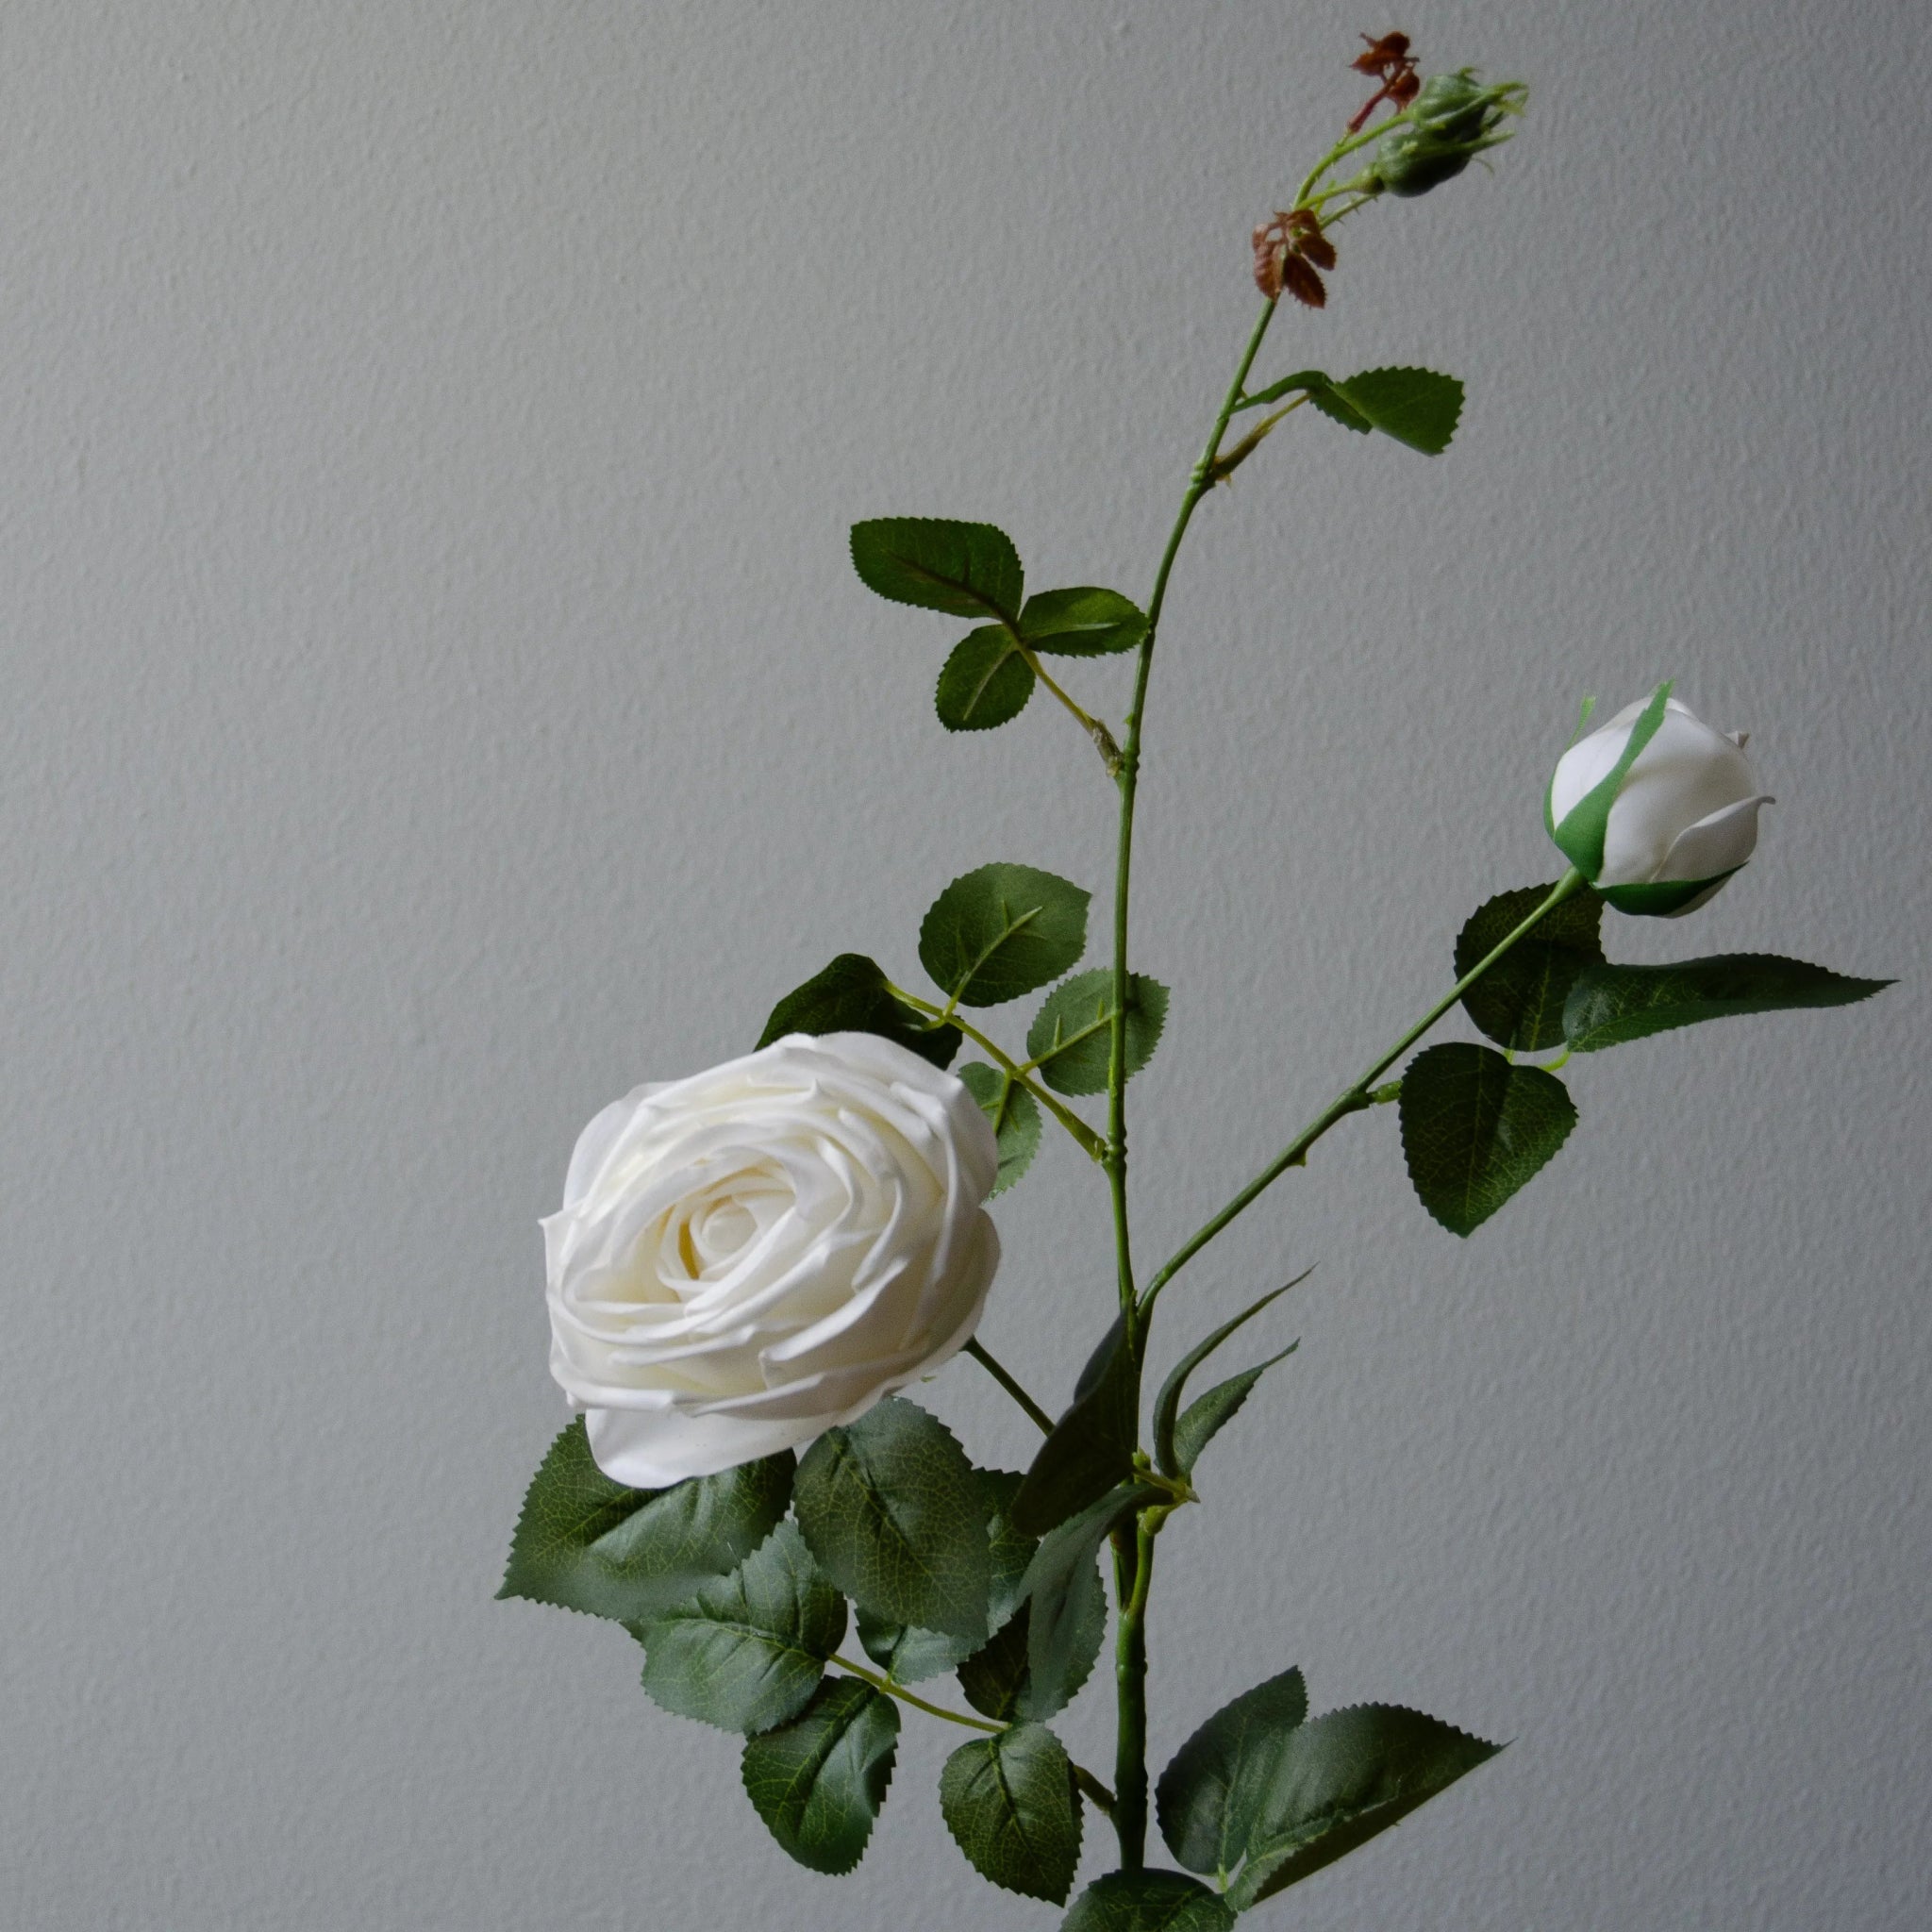 Premium Longstem Spray Roses in White from Botané